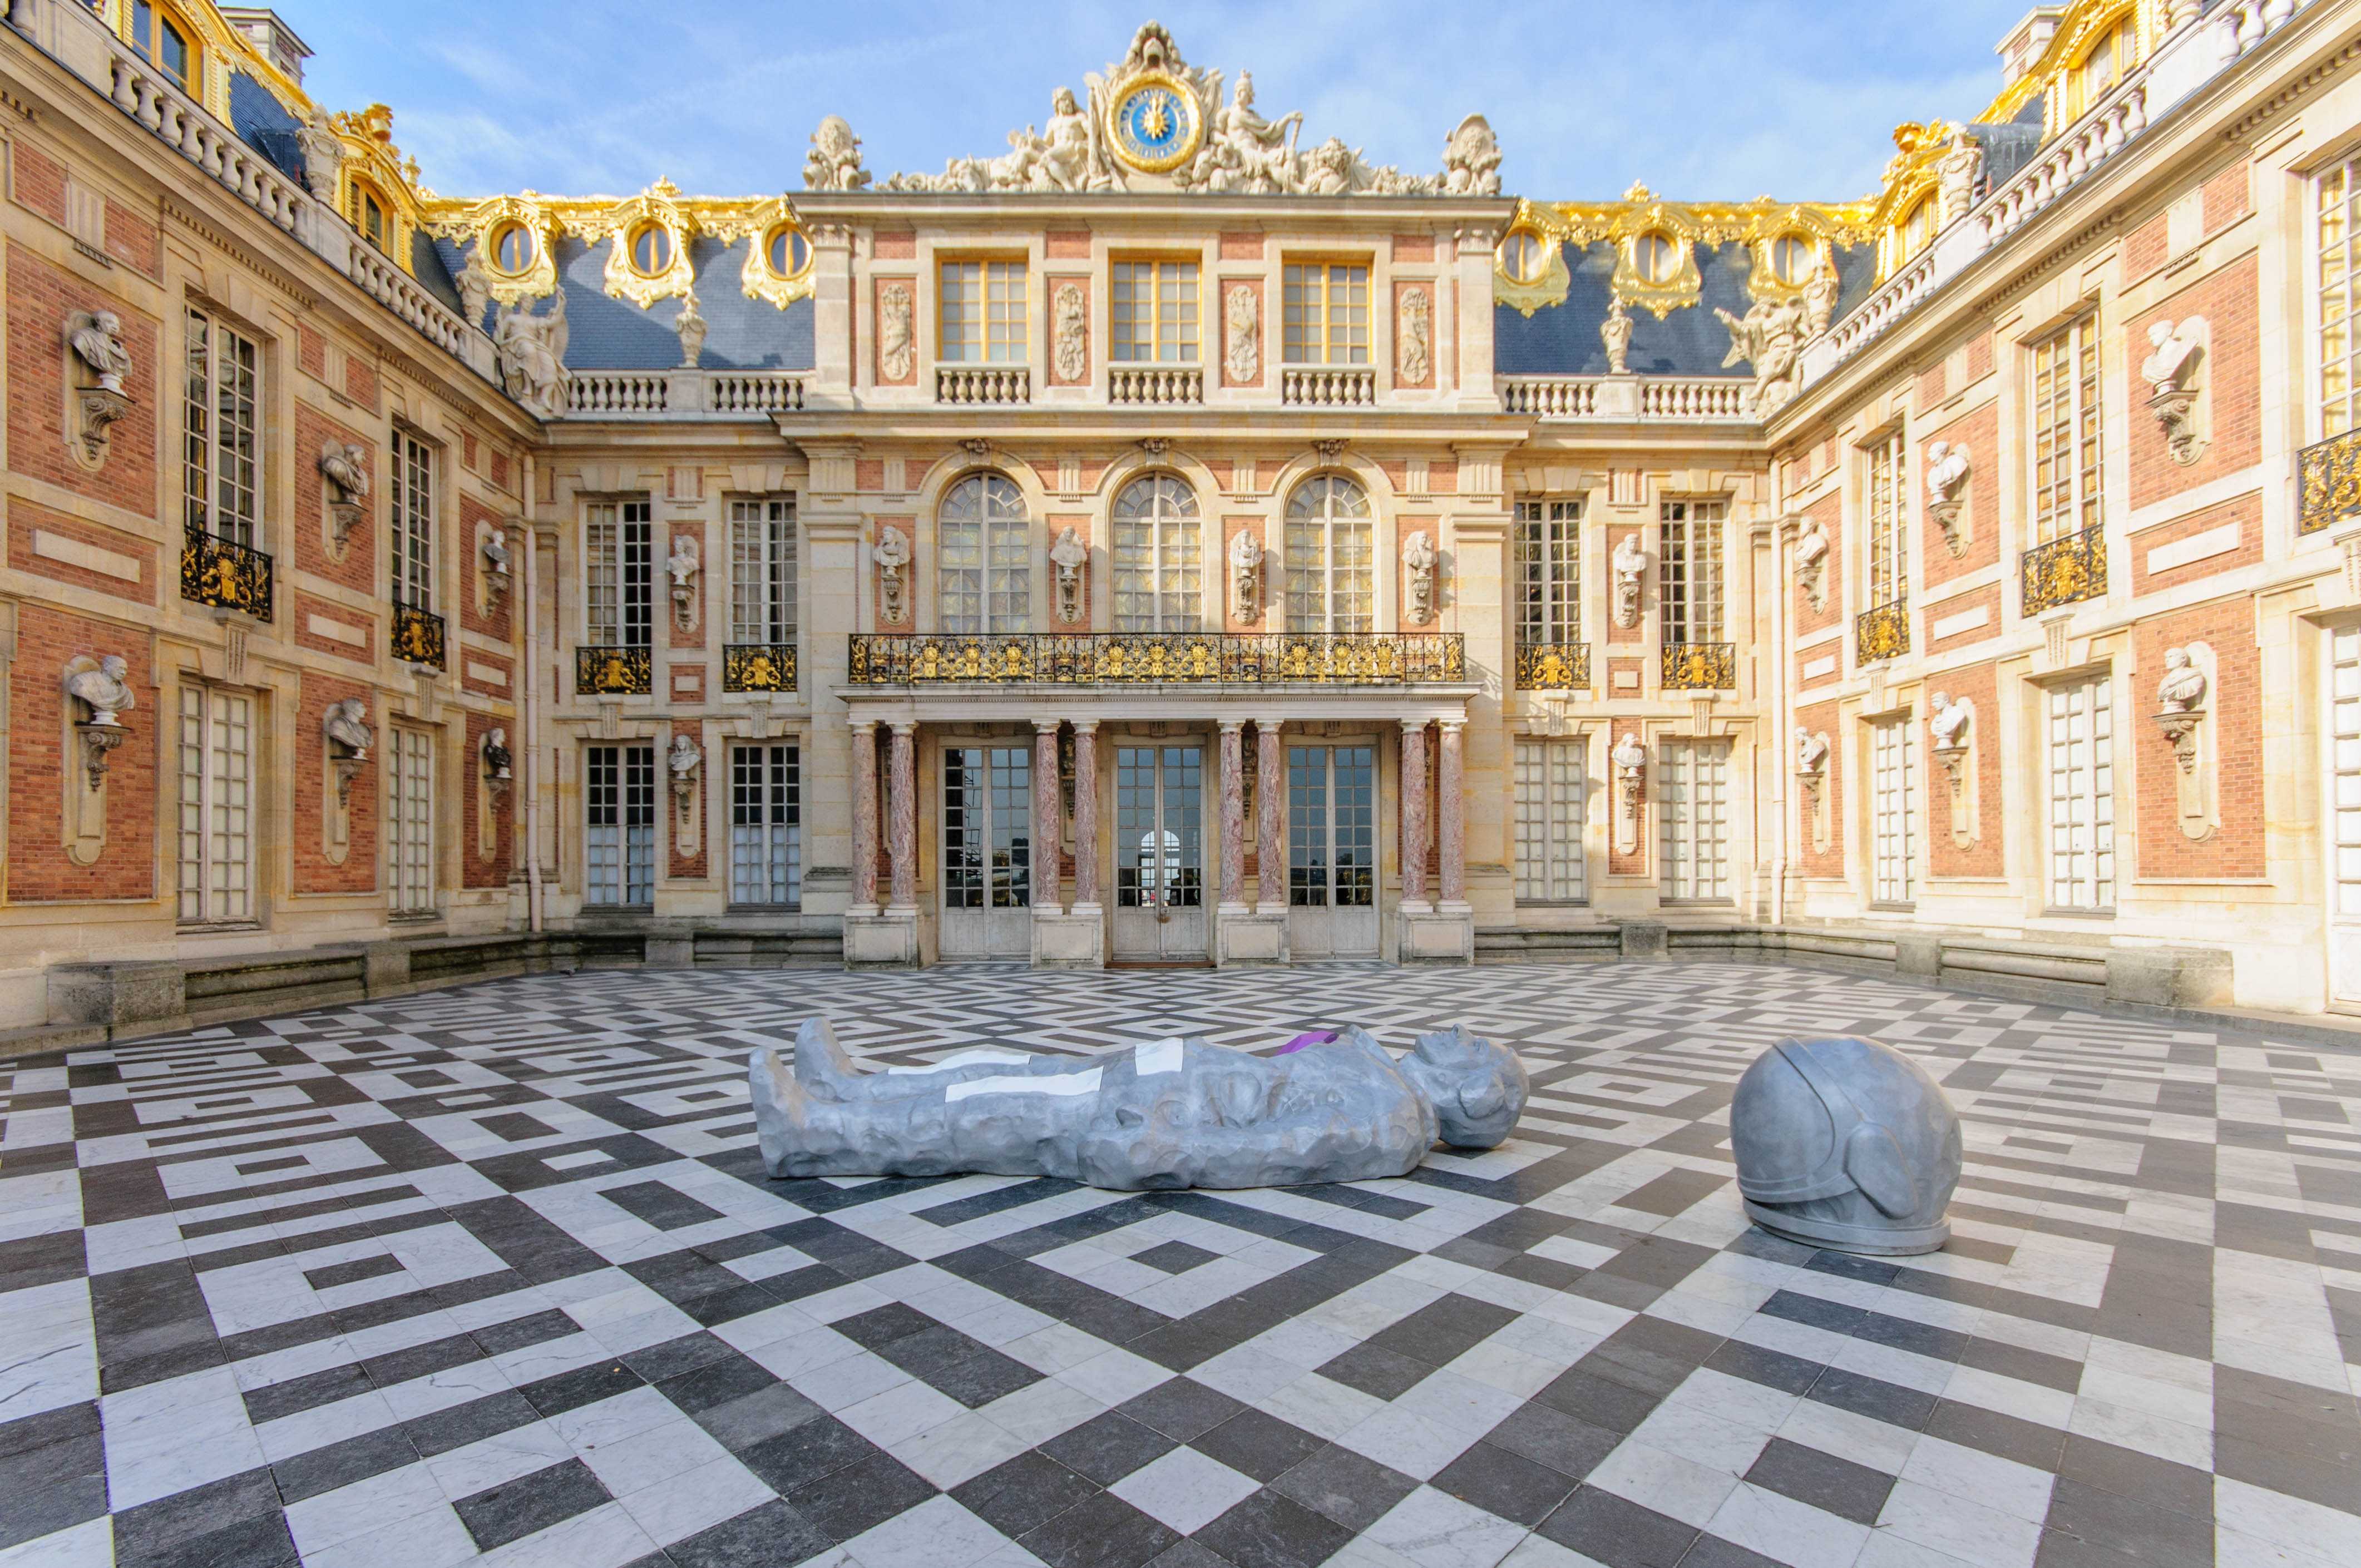 Chateau de versailles. Версальский дворец дворцы Версаля. Музей Версаль Франция. Королевский двор Версальского дворца. Версаль Королевский внутренний двор.